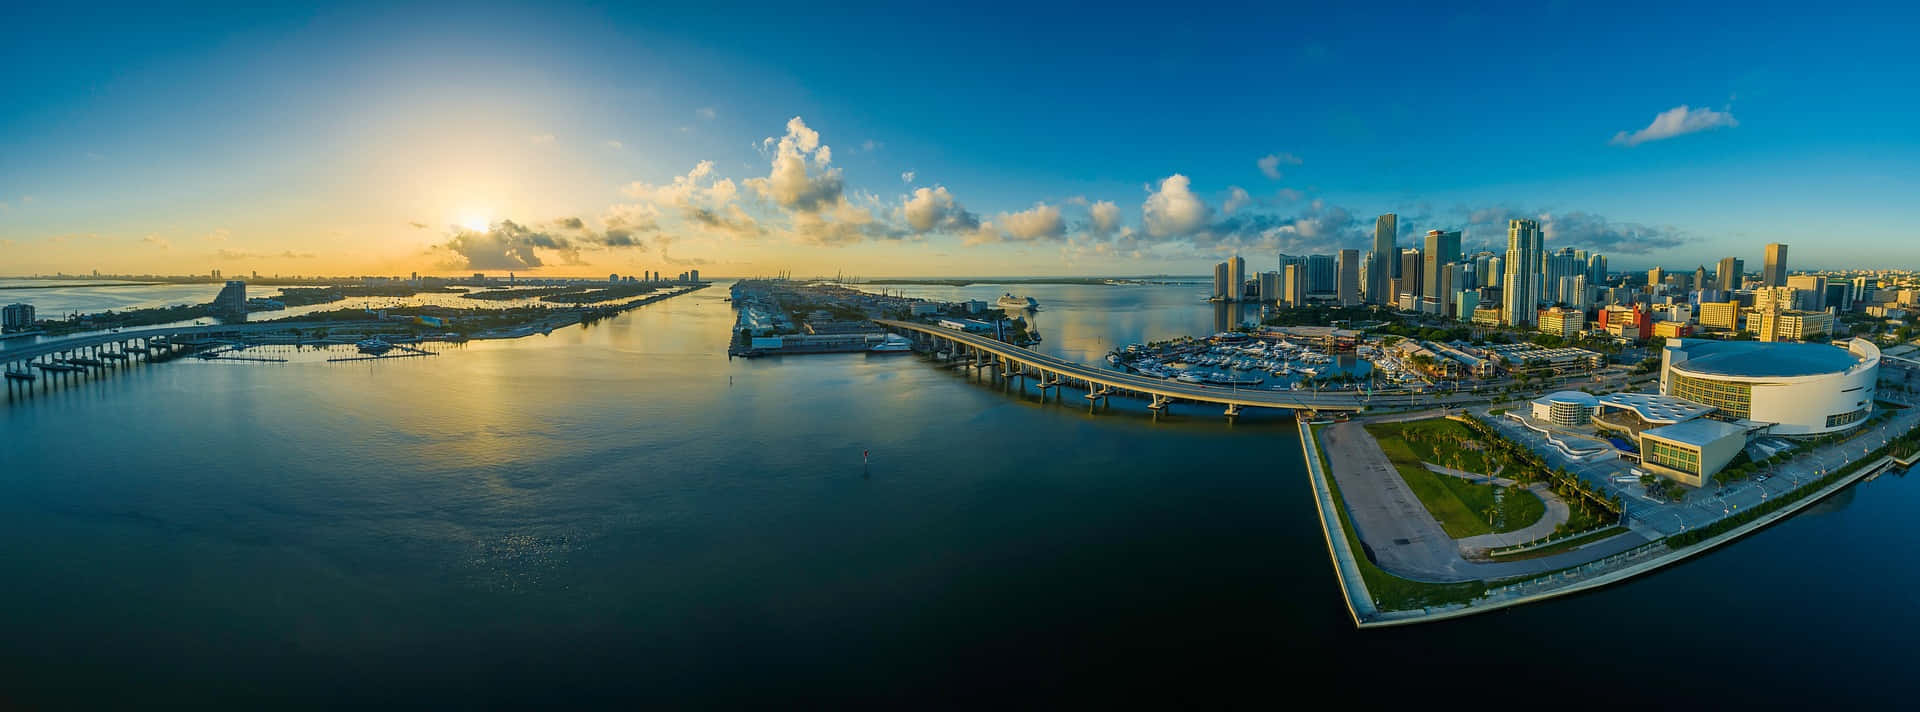 Imagenpanorámica Genial De La Ciudad De Miami